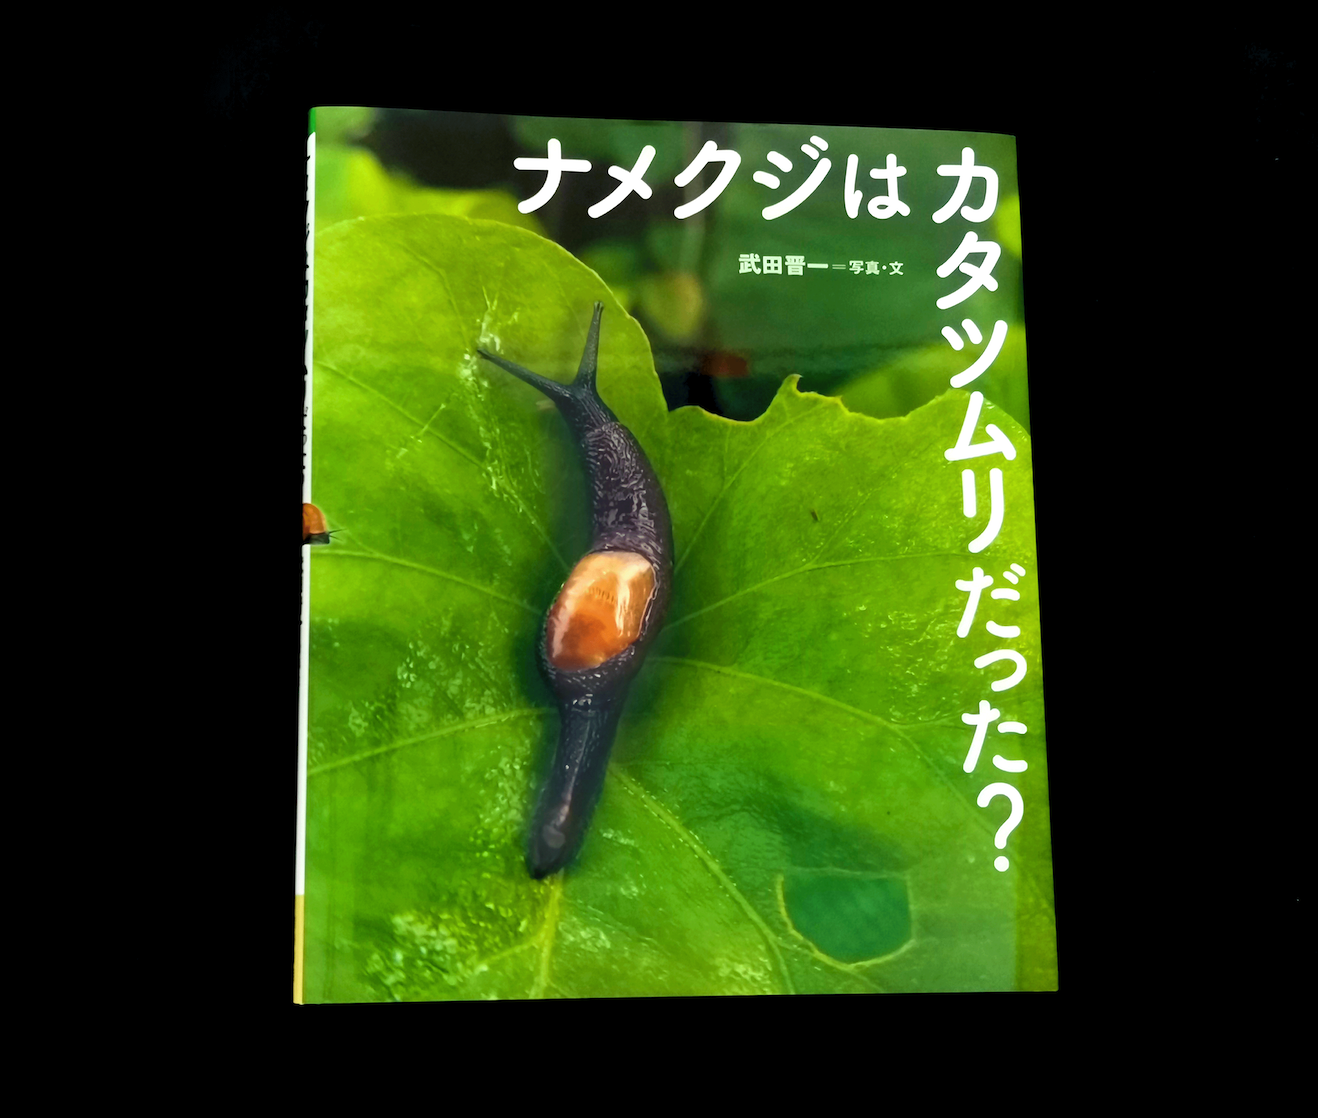 めくるめくほどに多種多様 カタツムリの不思議な進化に学ぶ一冊 東京印書館 写真集 絵本 美術書印刷 Tokyo Inshokan Printing Co Ltd